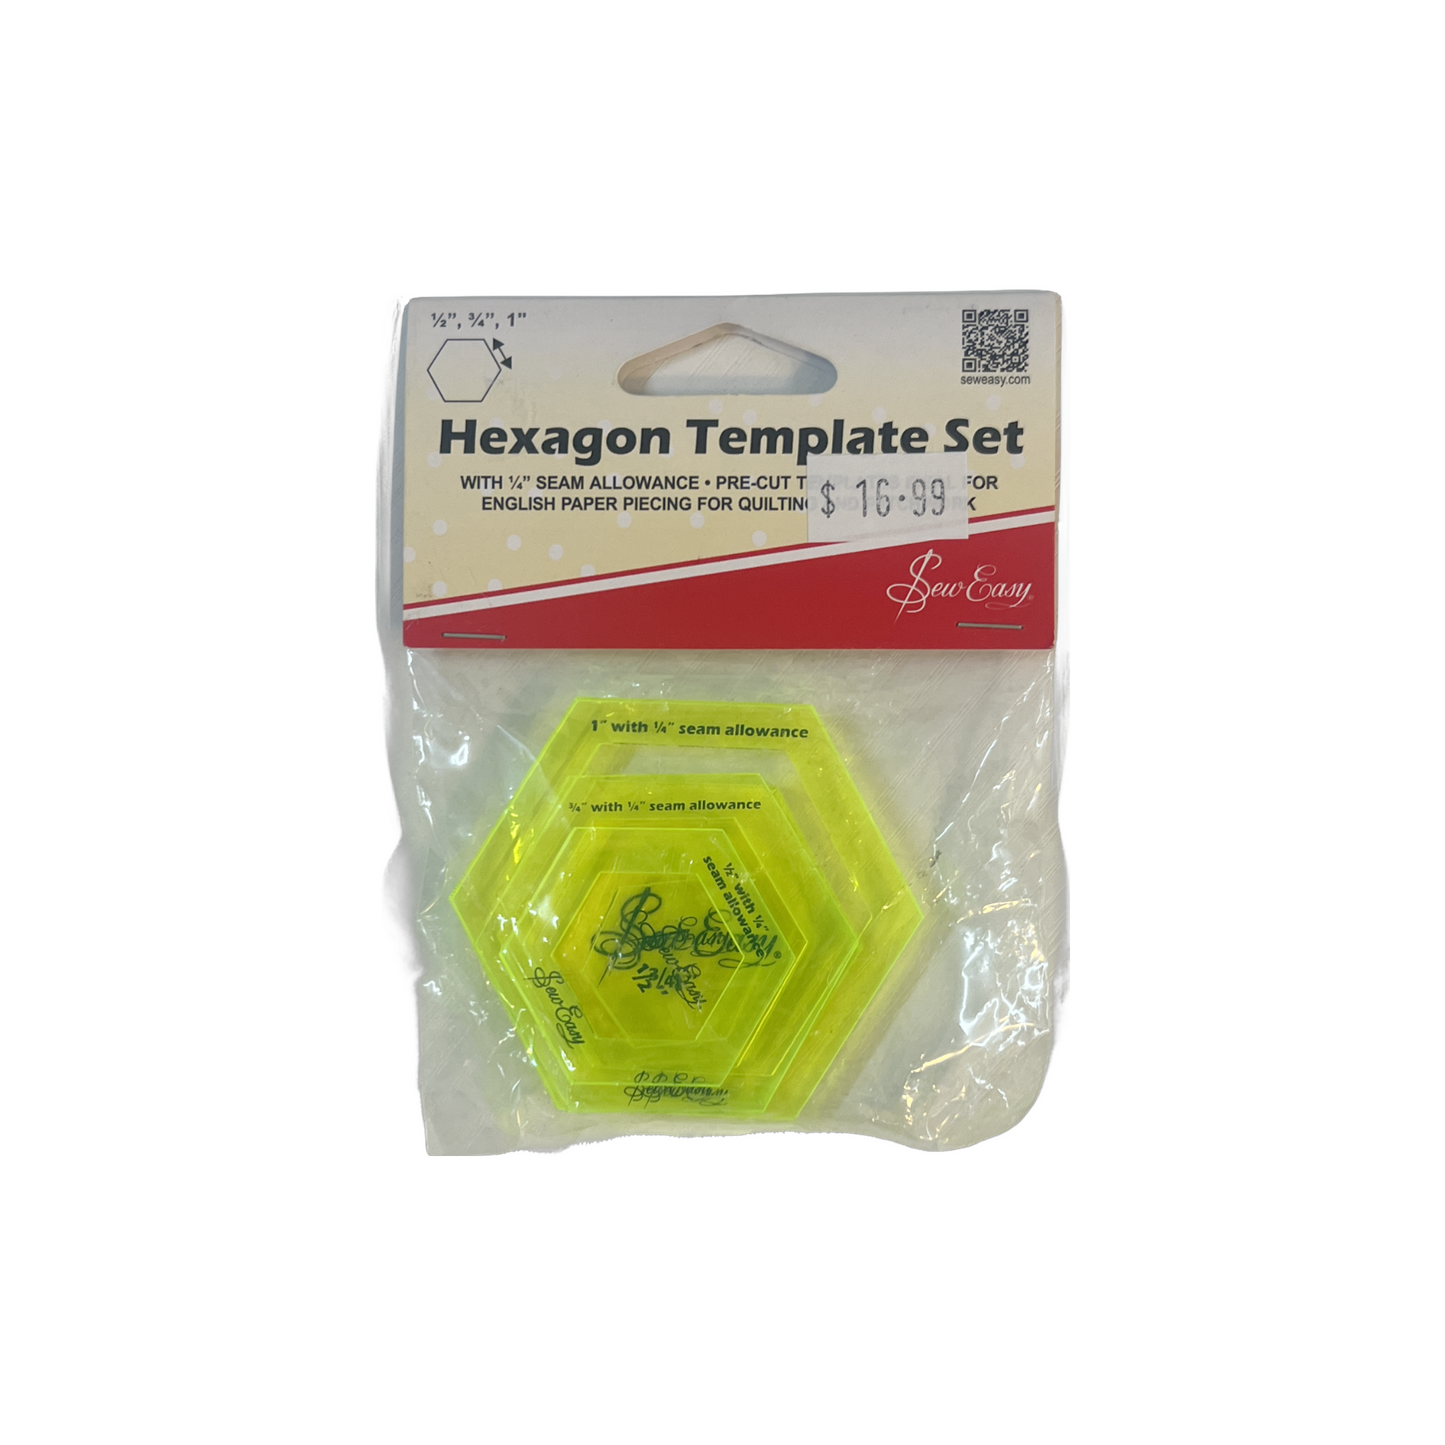 Hexagon Template Set with 1⁄4 Seam Allowance